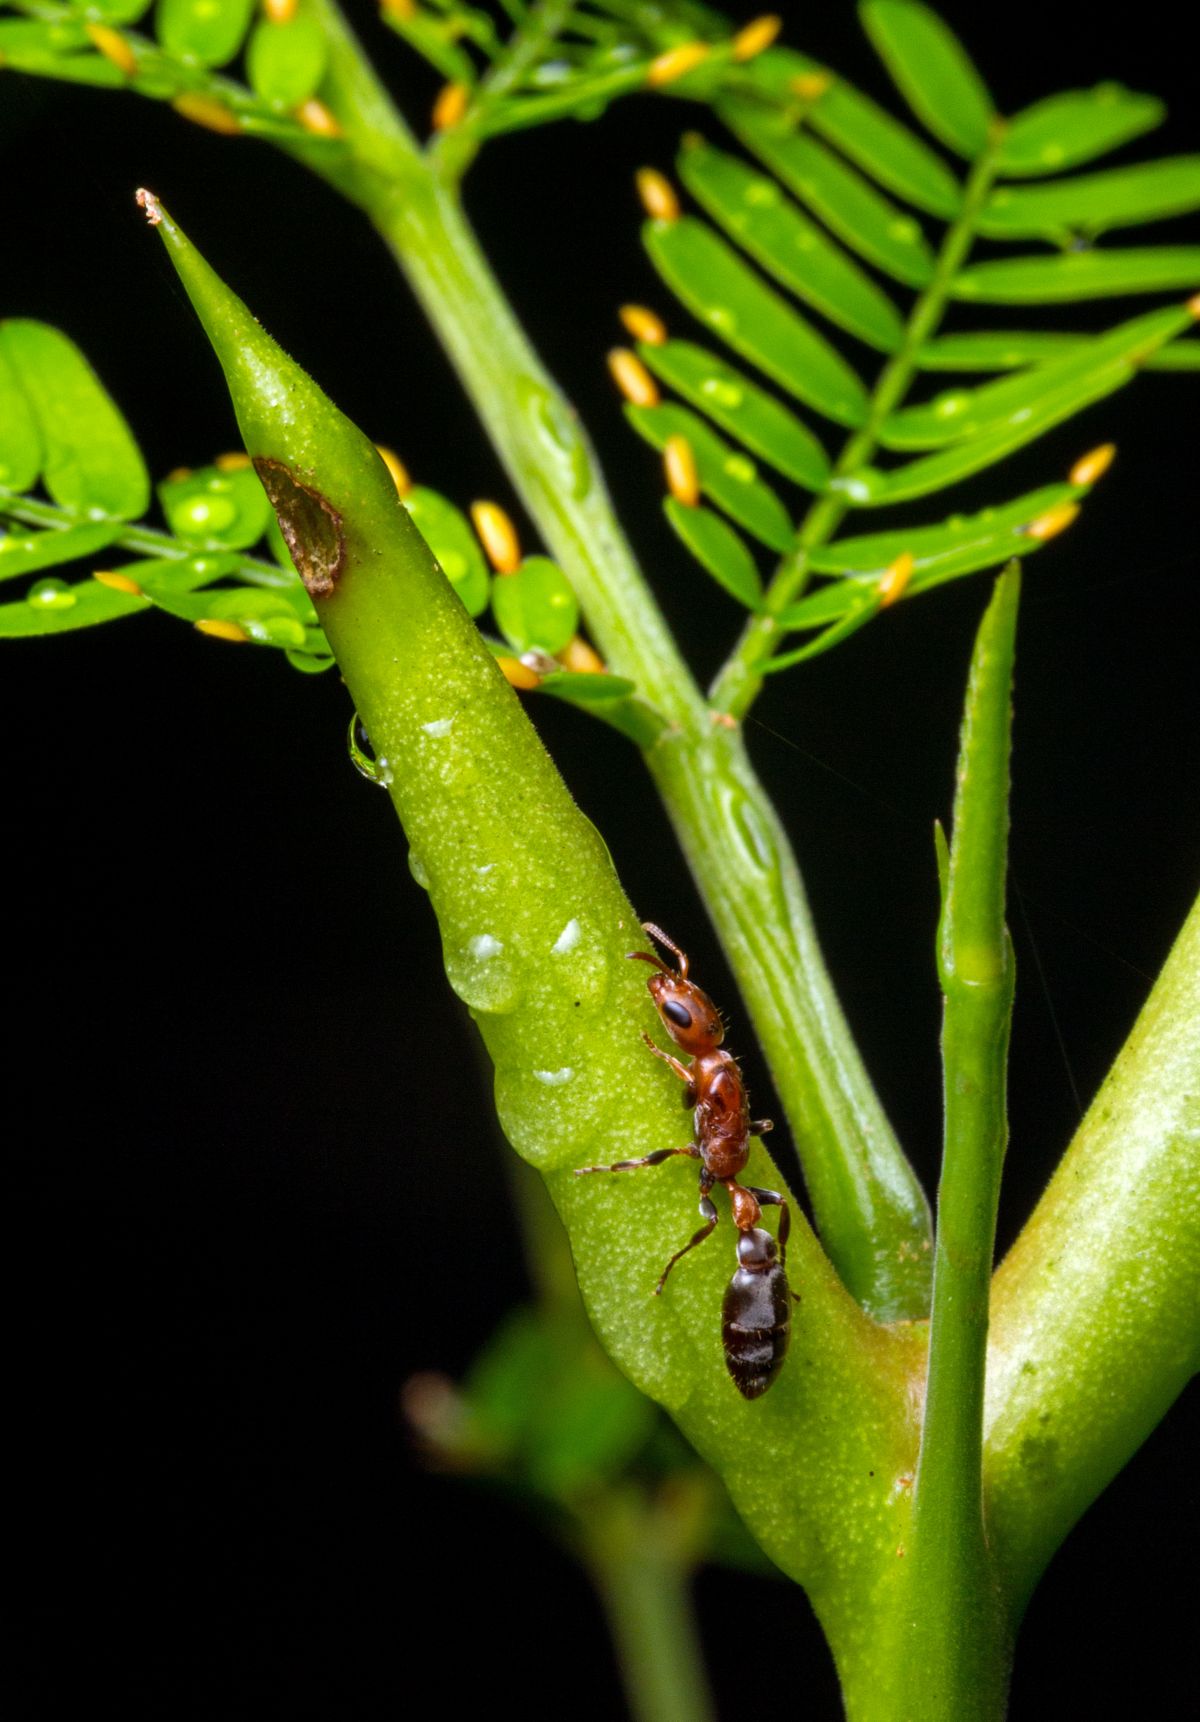 Auf den ersten Blick scheint diese Beziehung freundschaftlich, doch der Nektar der Pflanze treibt die Ameisen in die Abhängigkeit. Mehr dazu lesen...
